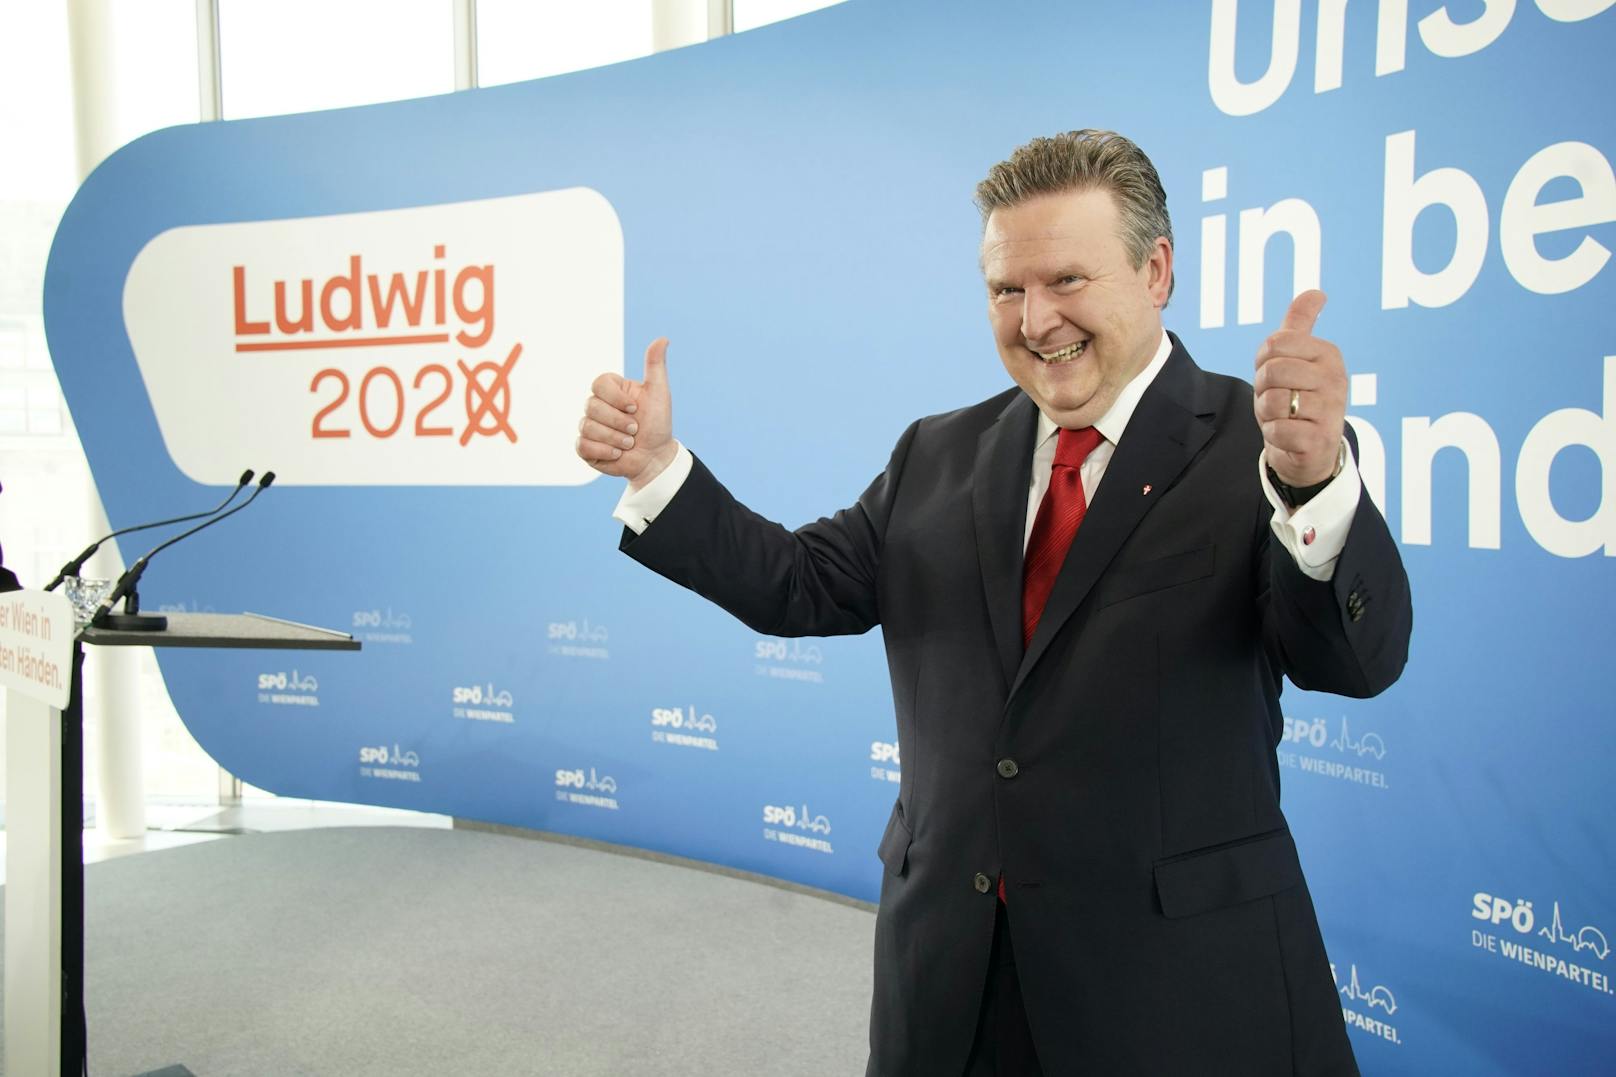 Michael Ludwig hat gut lachen: Seit der Wien-Wahl im Oktober 2020 legte er bei der Beliebtheit stetig zu. Laut einer aktuelle Umfrage würden ihn 70% der Befragten direkt zum Bürgermeister wählen.